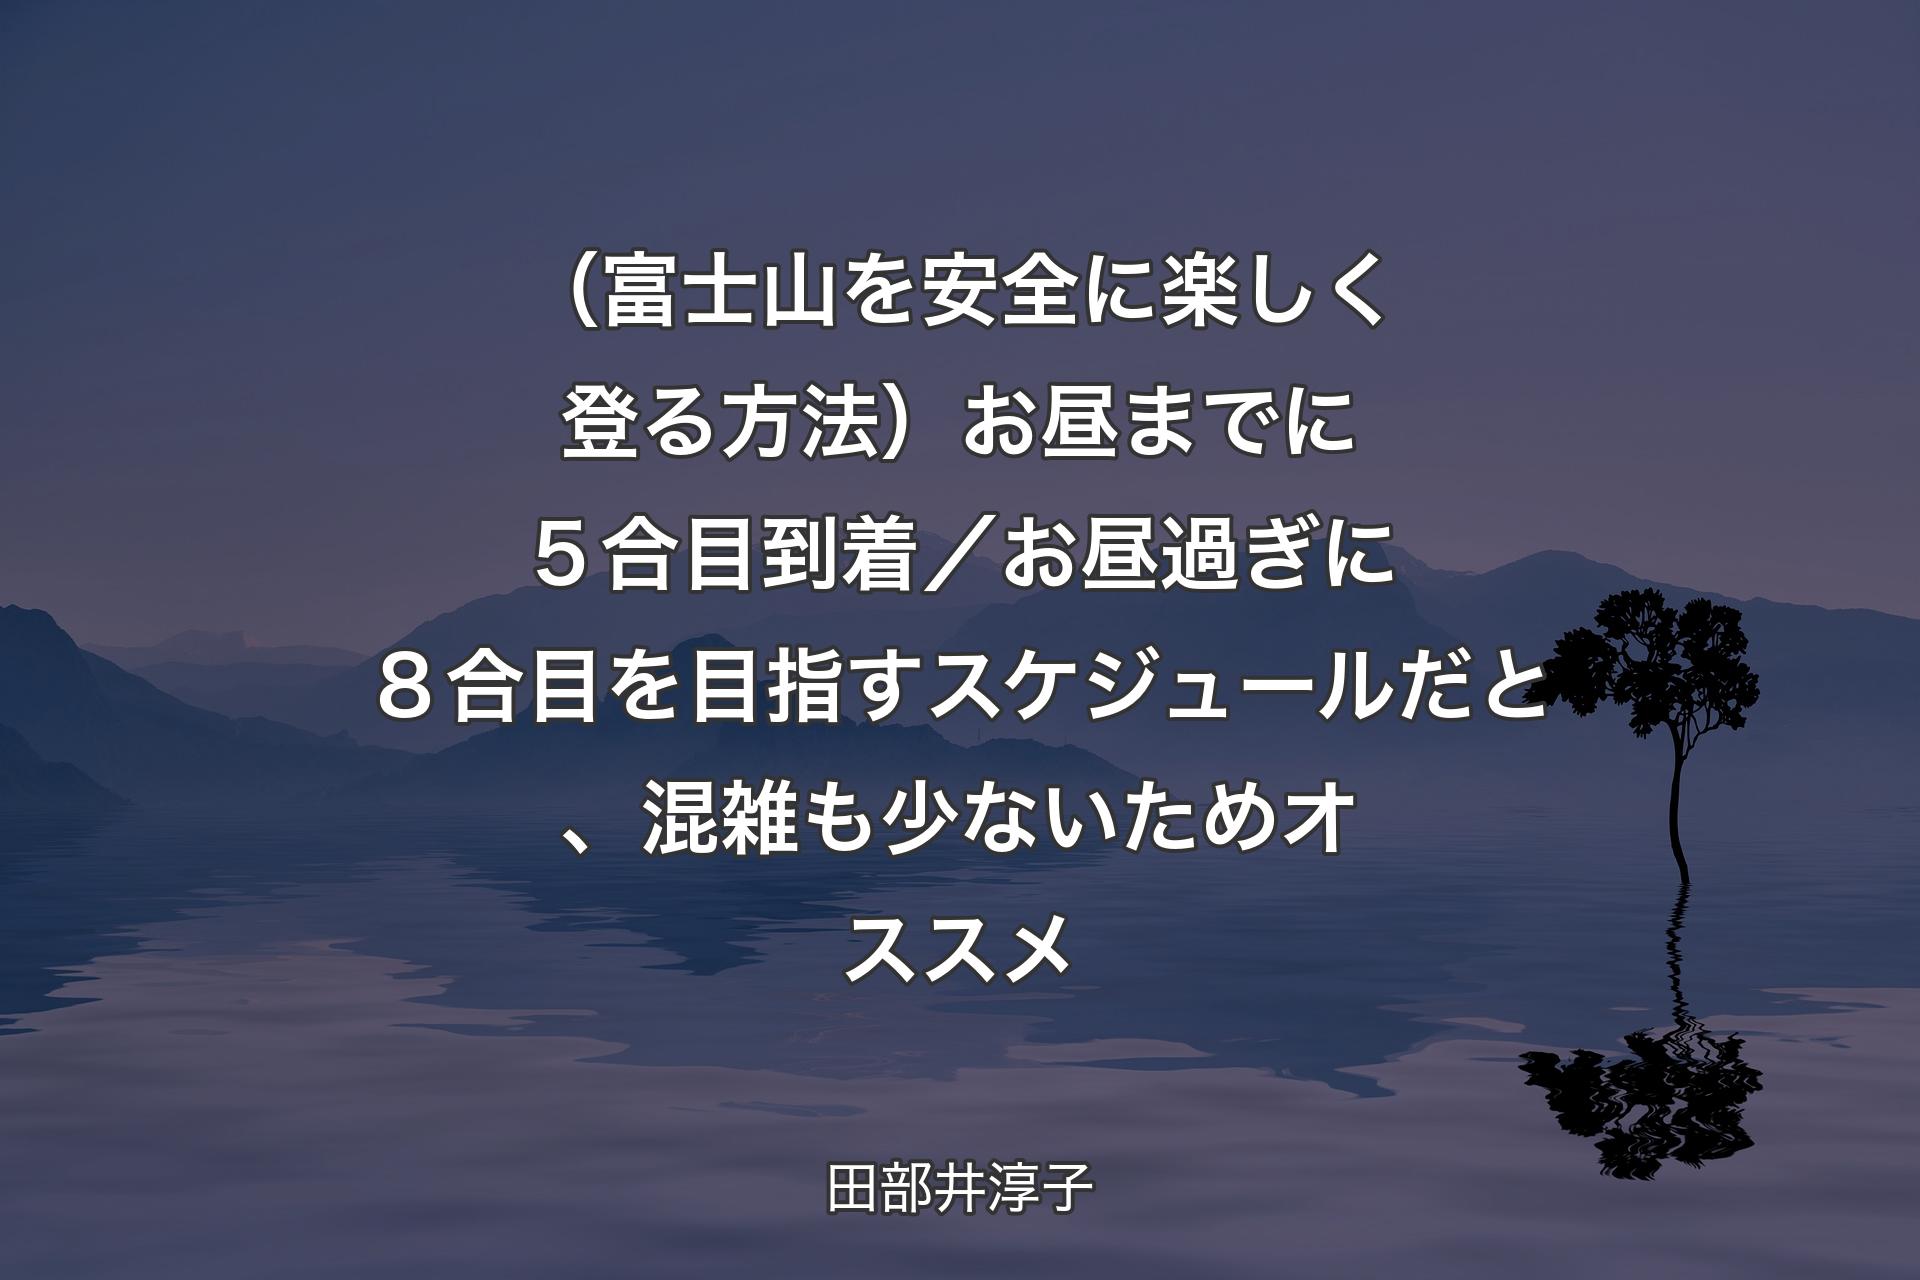 【背景4】（富士山を安全に楽しく登る方法）お昼までに５合目到着／お昼過ぎに８合目を目指すスケジュールだと、混雑も少ないためオススメ - 田部井淳子